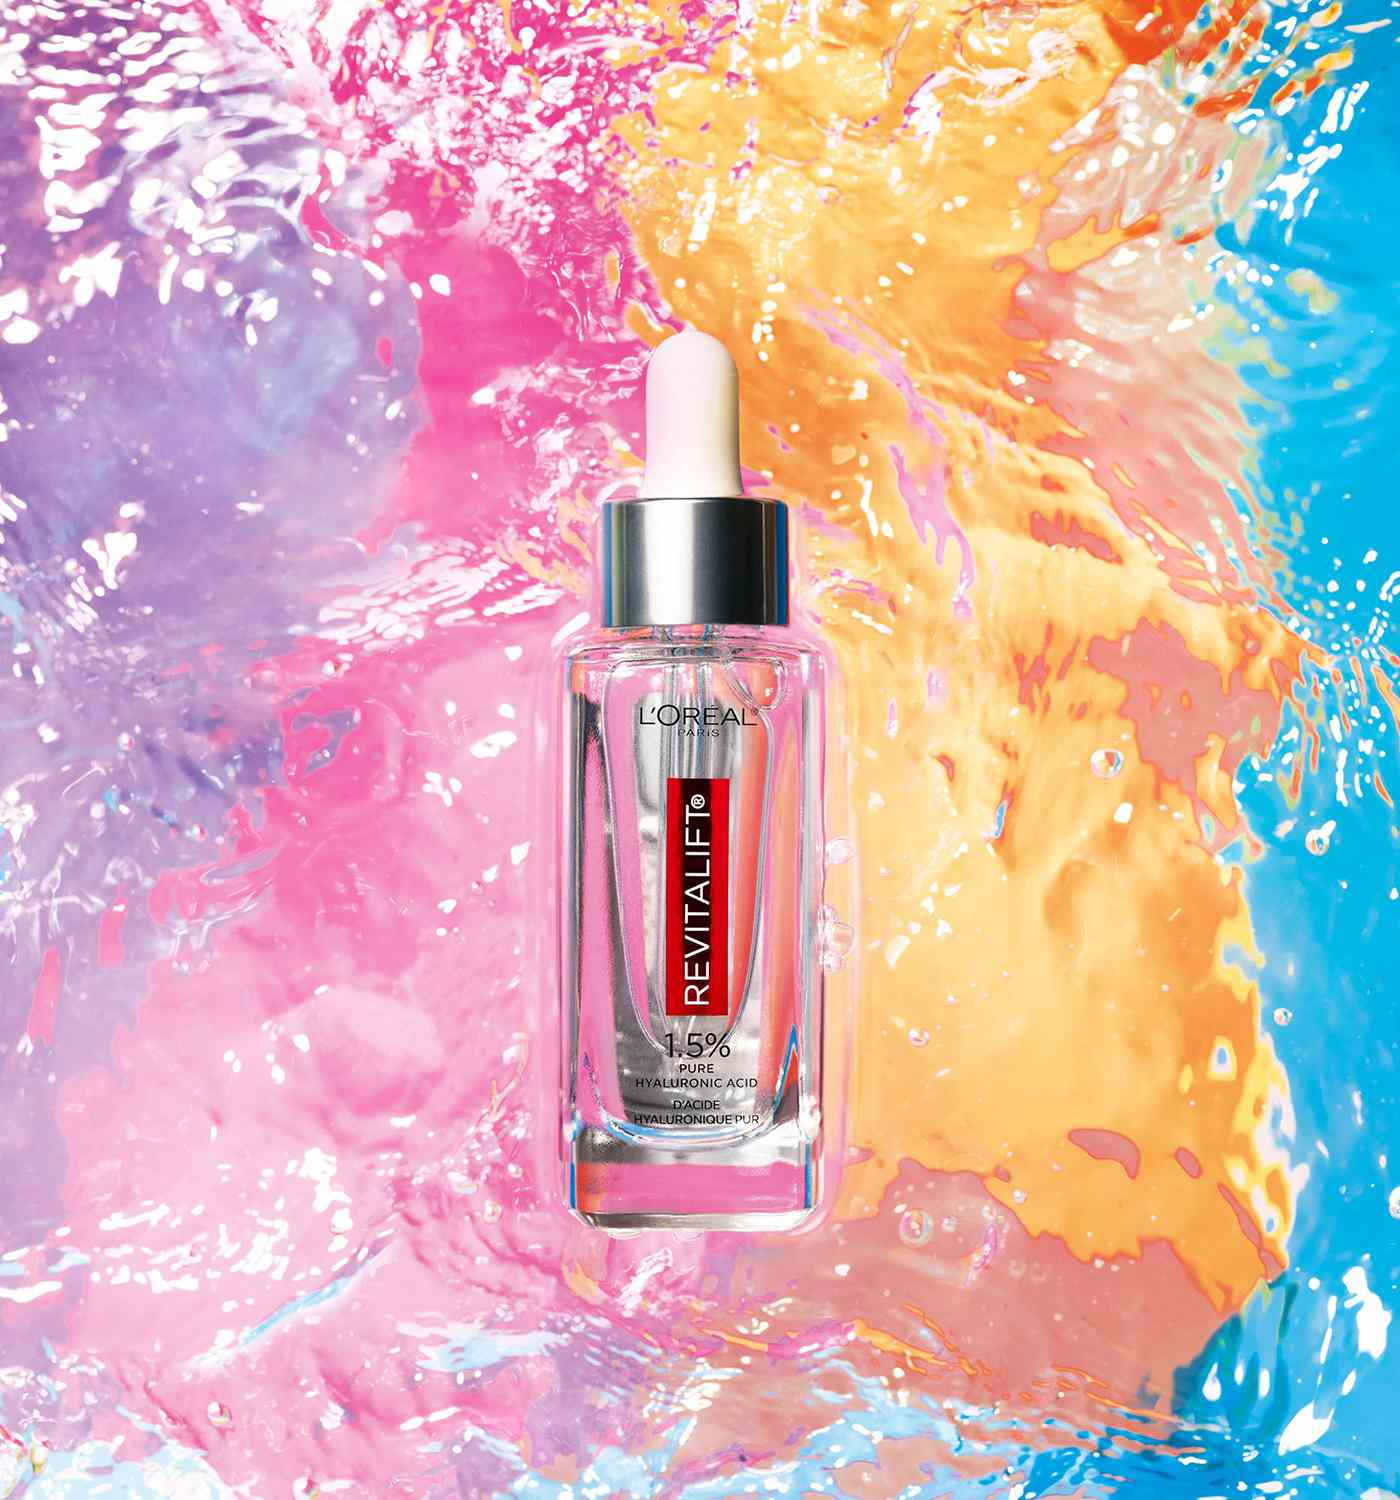 L’Oréal Paris Revitalift bottle colorful water ripple background